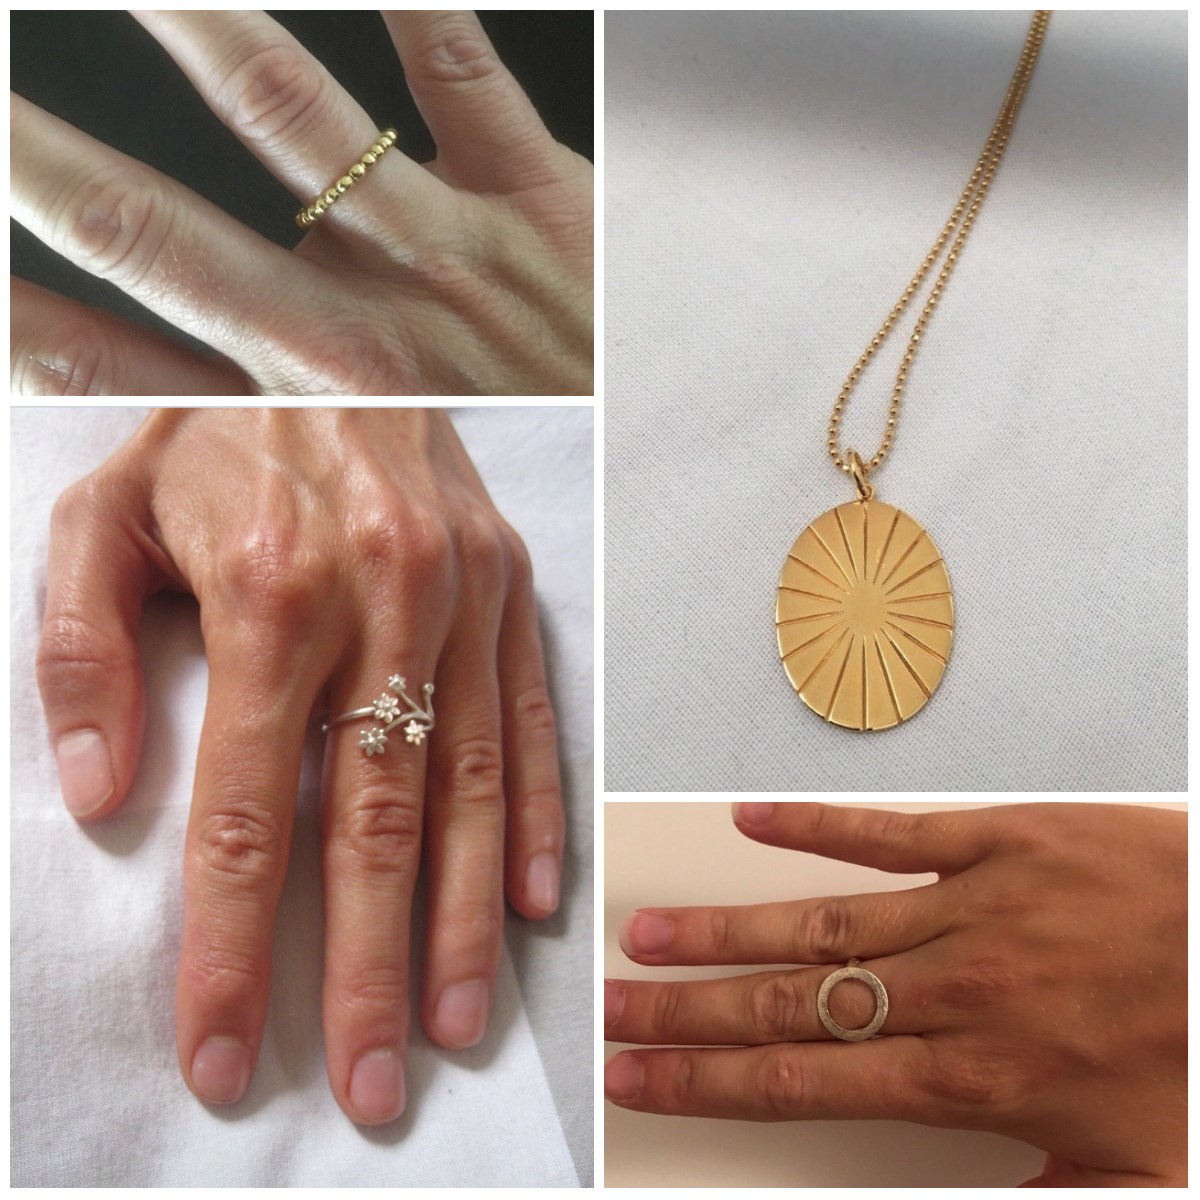 Her er fire smykker af Pernille Corydon, som er til salg på DBA netop nu. De to ringe, som ikke er den med blomsterne, er til salg på DBA for 150 kroner eller derunder